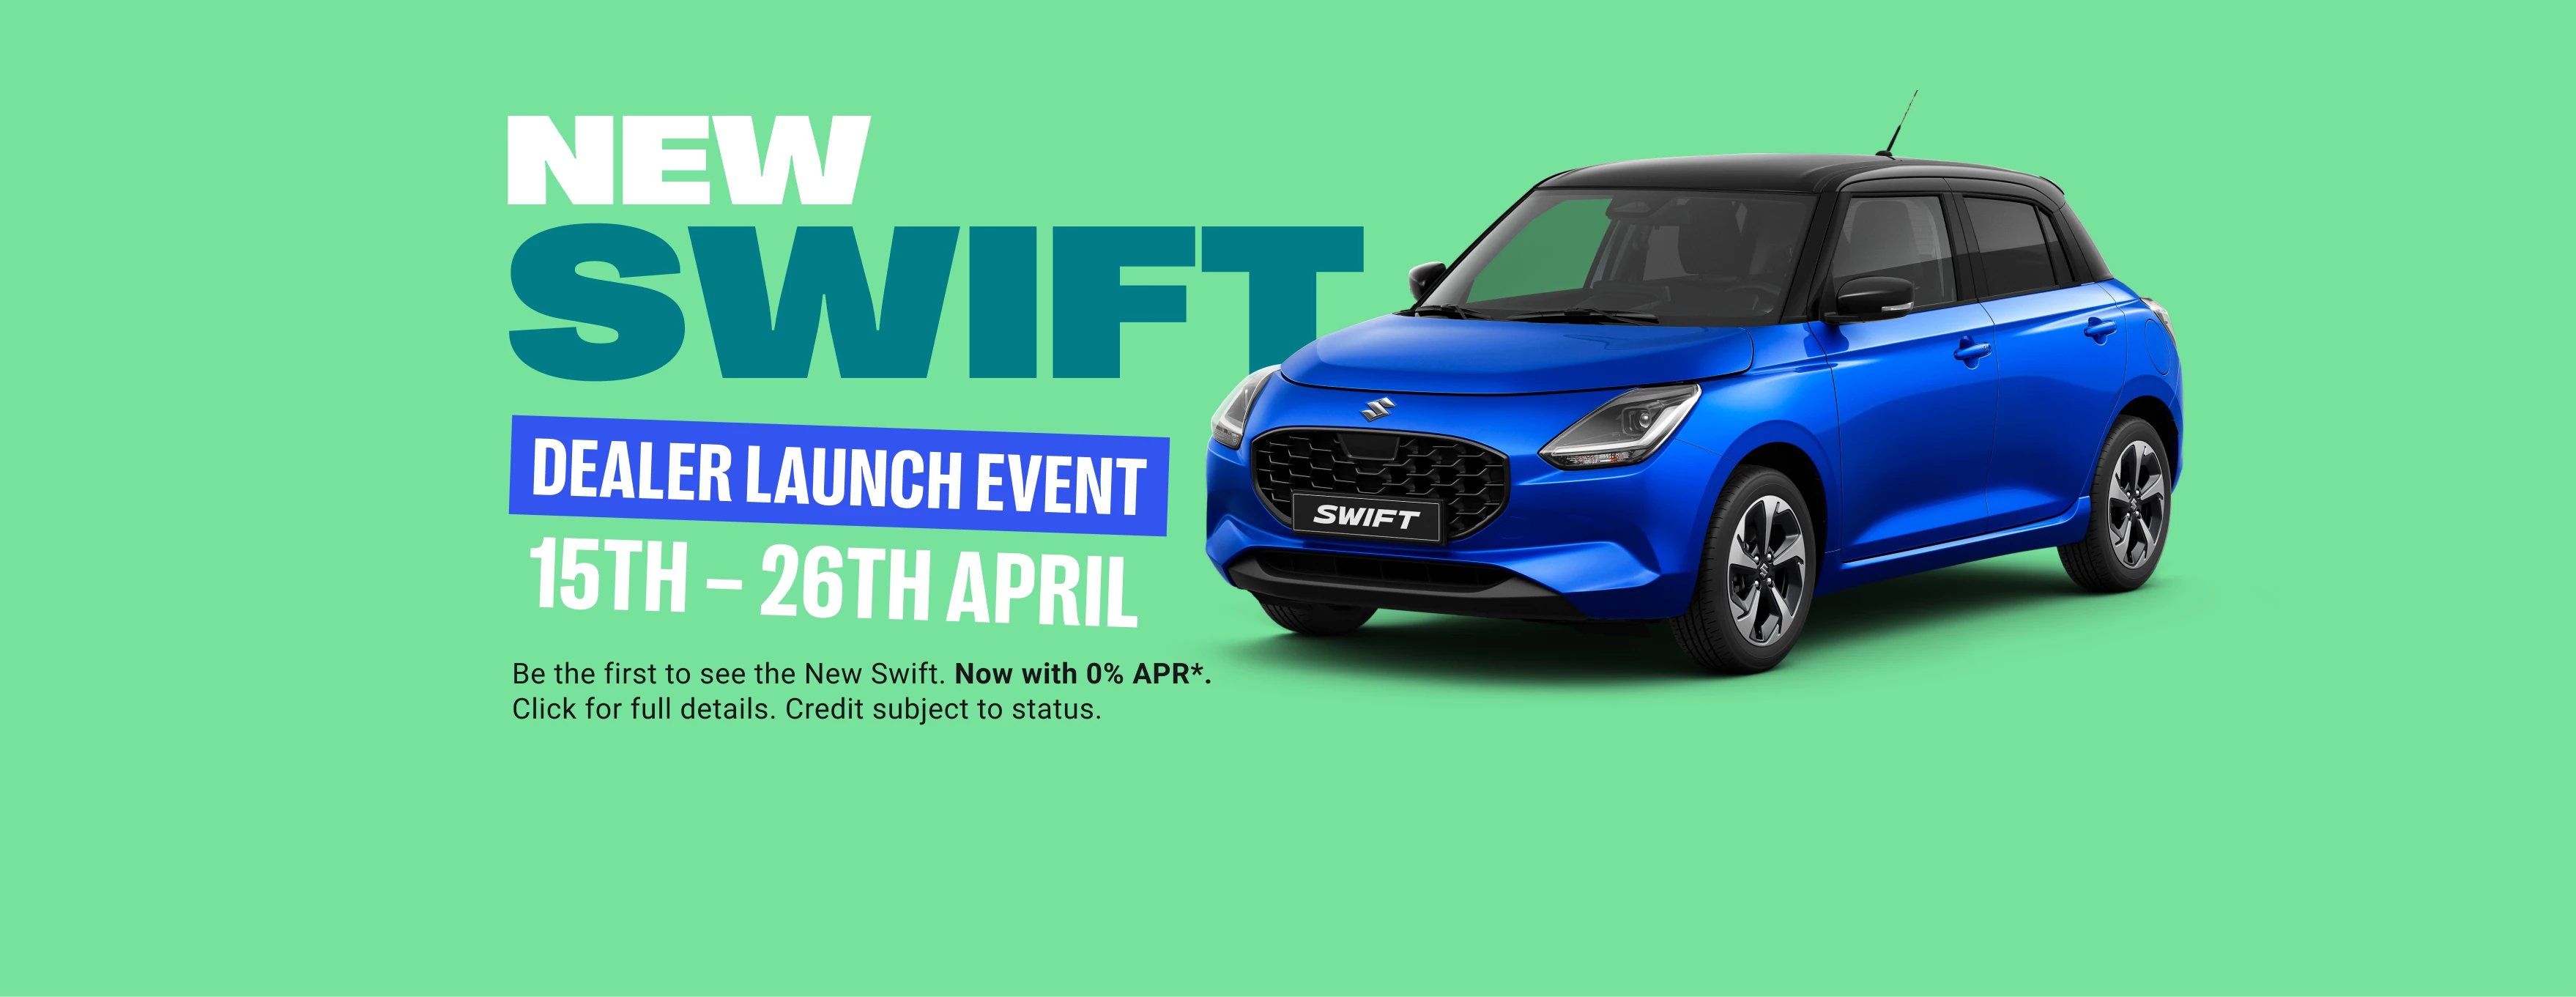 New Swift Dealer Launch Event 